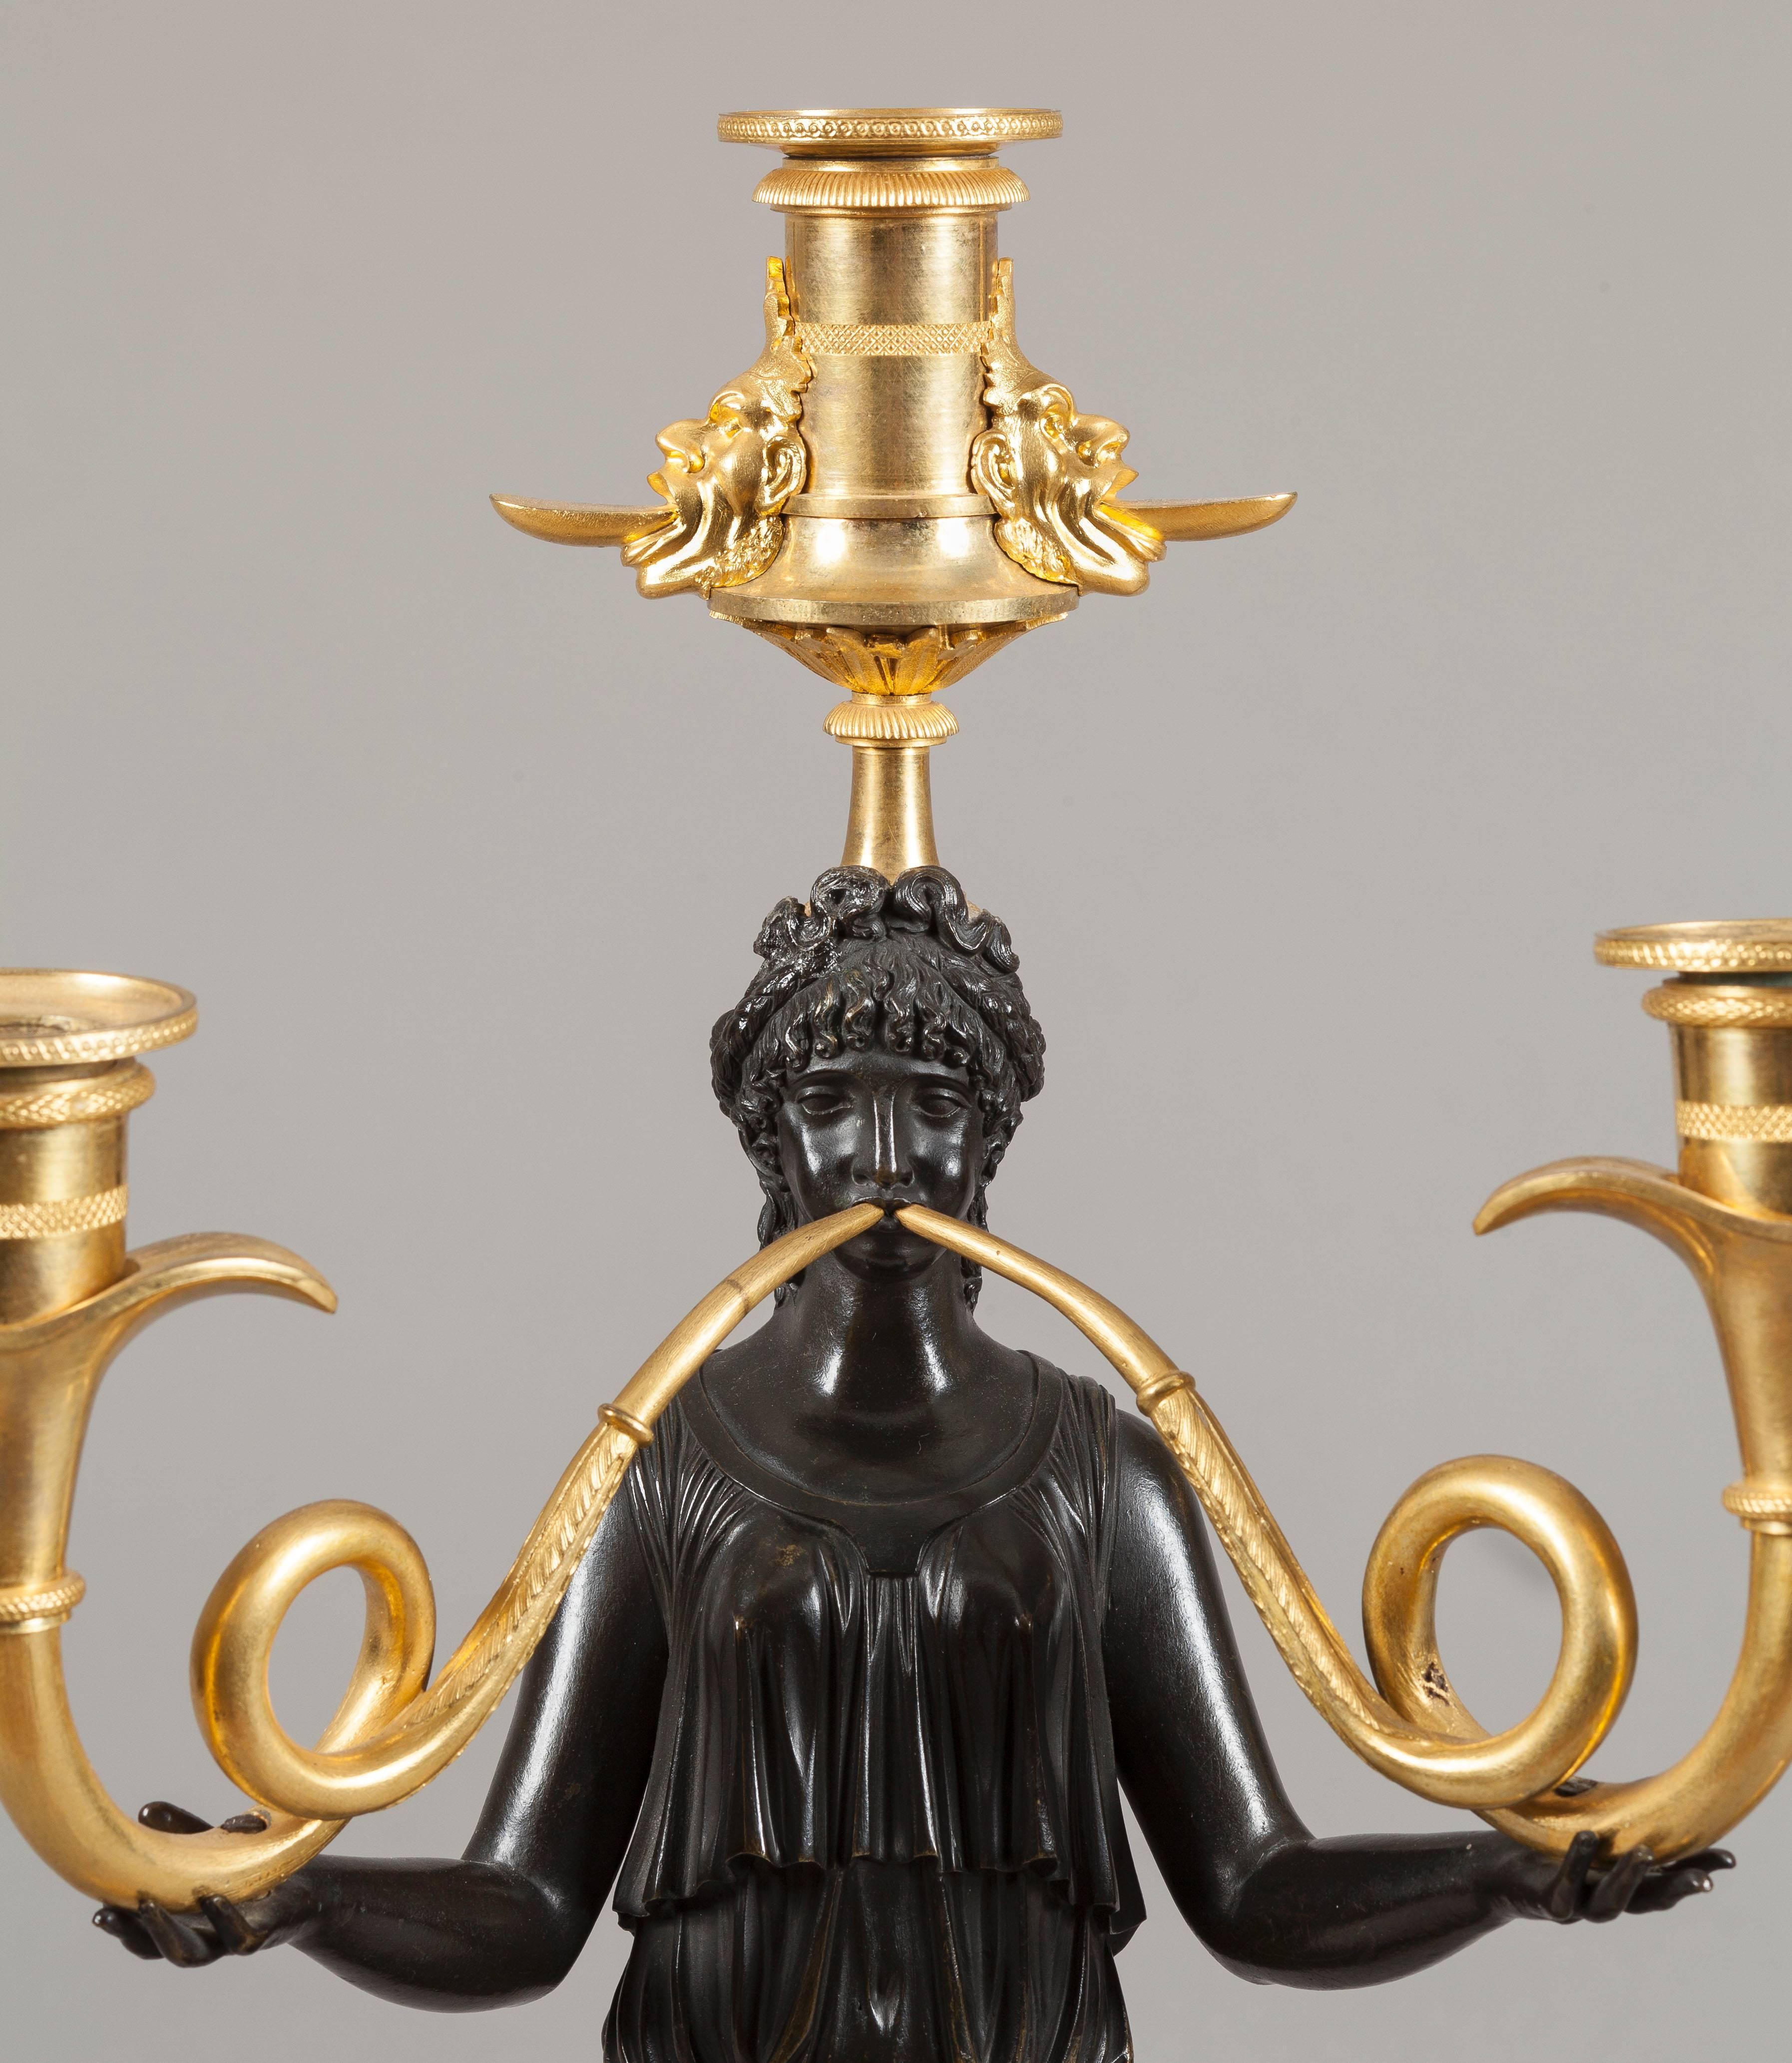 
Aus zweifarbig vergoldeter und patinierter Bronze; die weiblichen griechischen Figuren sind in durchsichtige Gewänder gehüllt und blasen zweiförmige Trompeten in geschwungener Form, die in Kerzenständern enden und mit einzelnen Kerzenhaltern